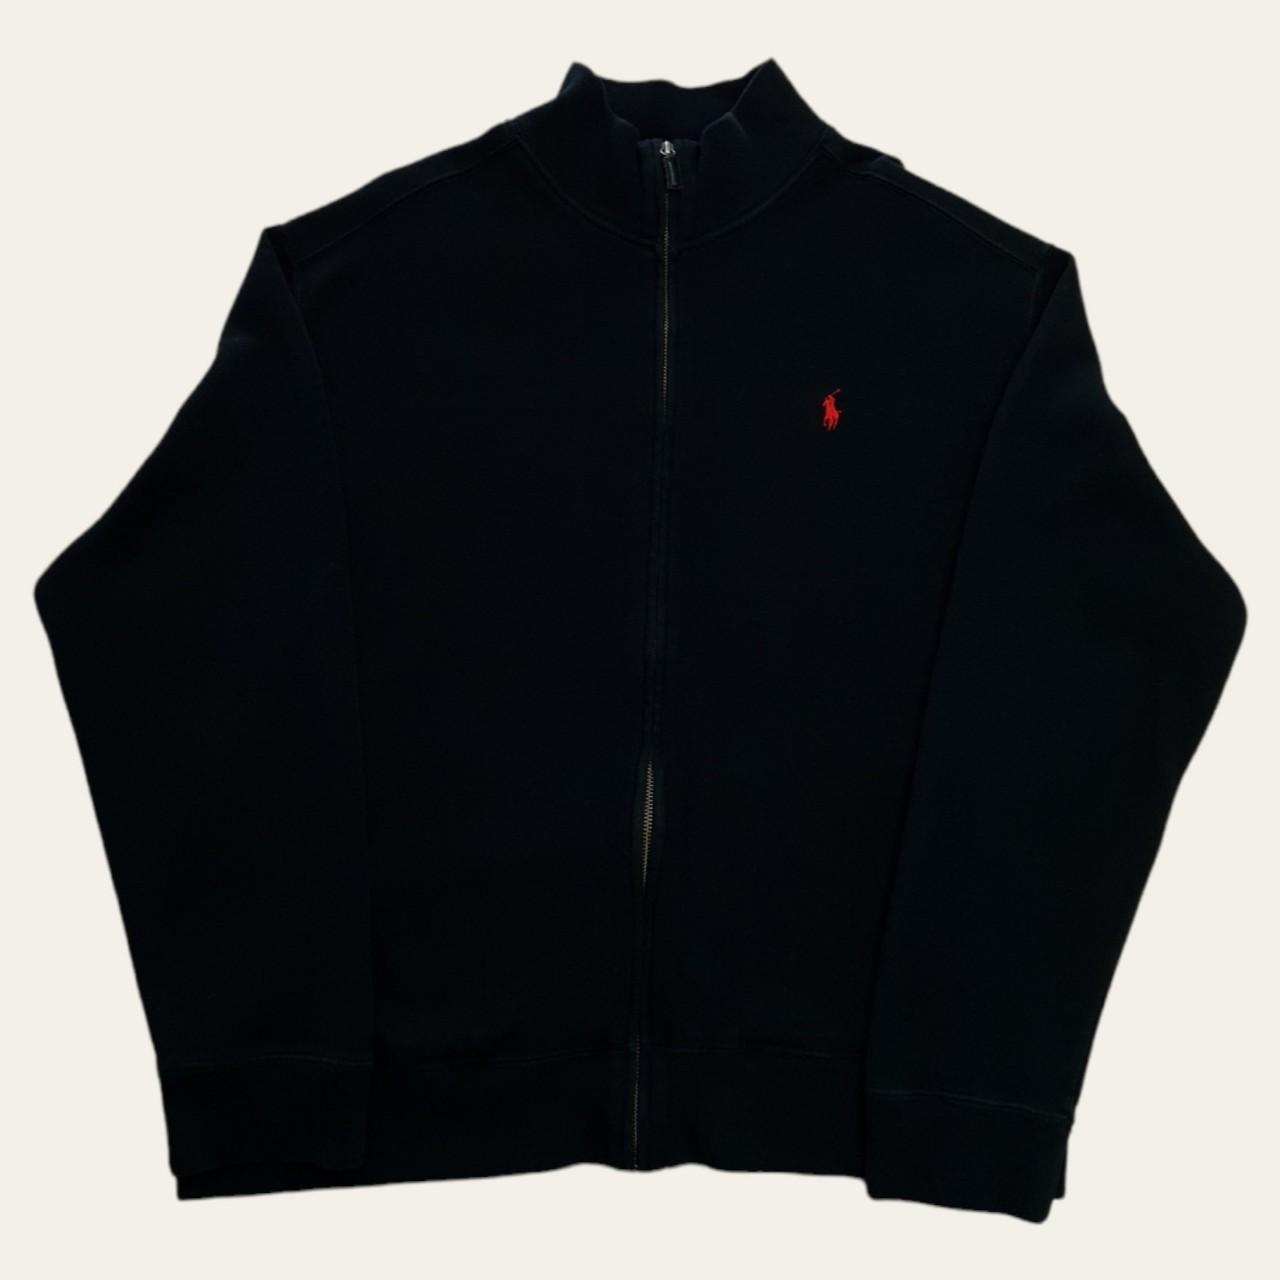 Vintage Ralph Lauren Full Zip jacket Jumper in black... - Depop